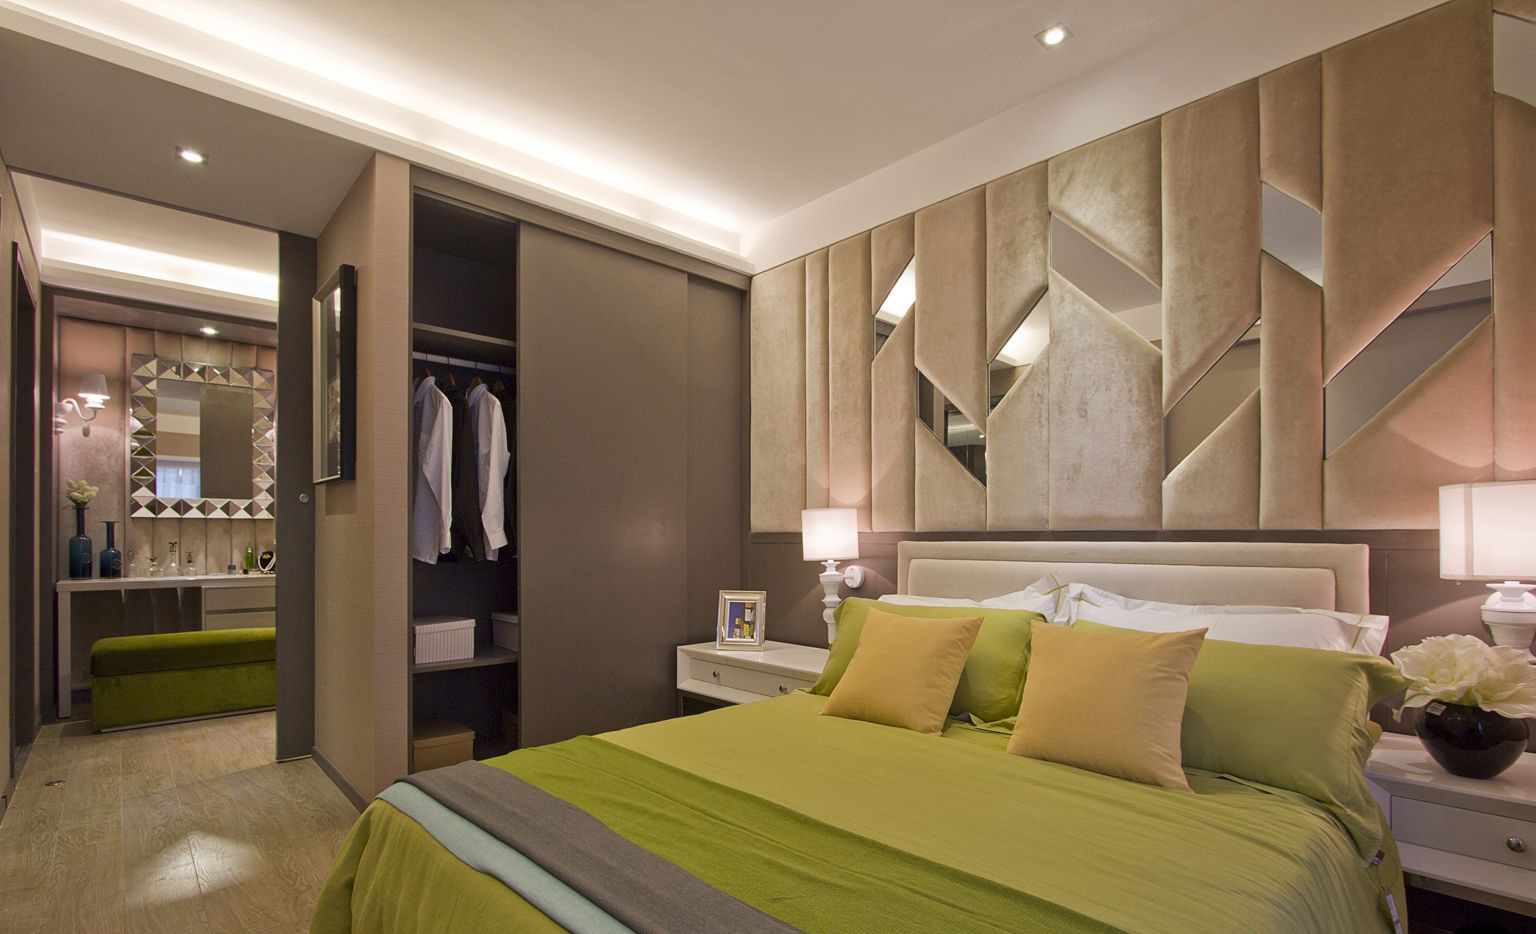 卧室绿色的床品很是舒适很适合休息的场所，神似大自然的场地